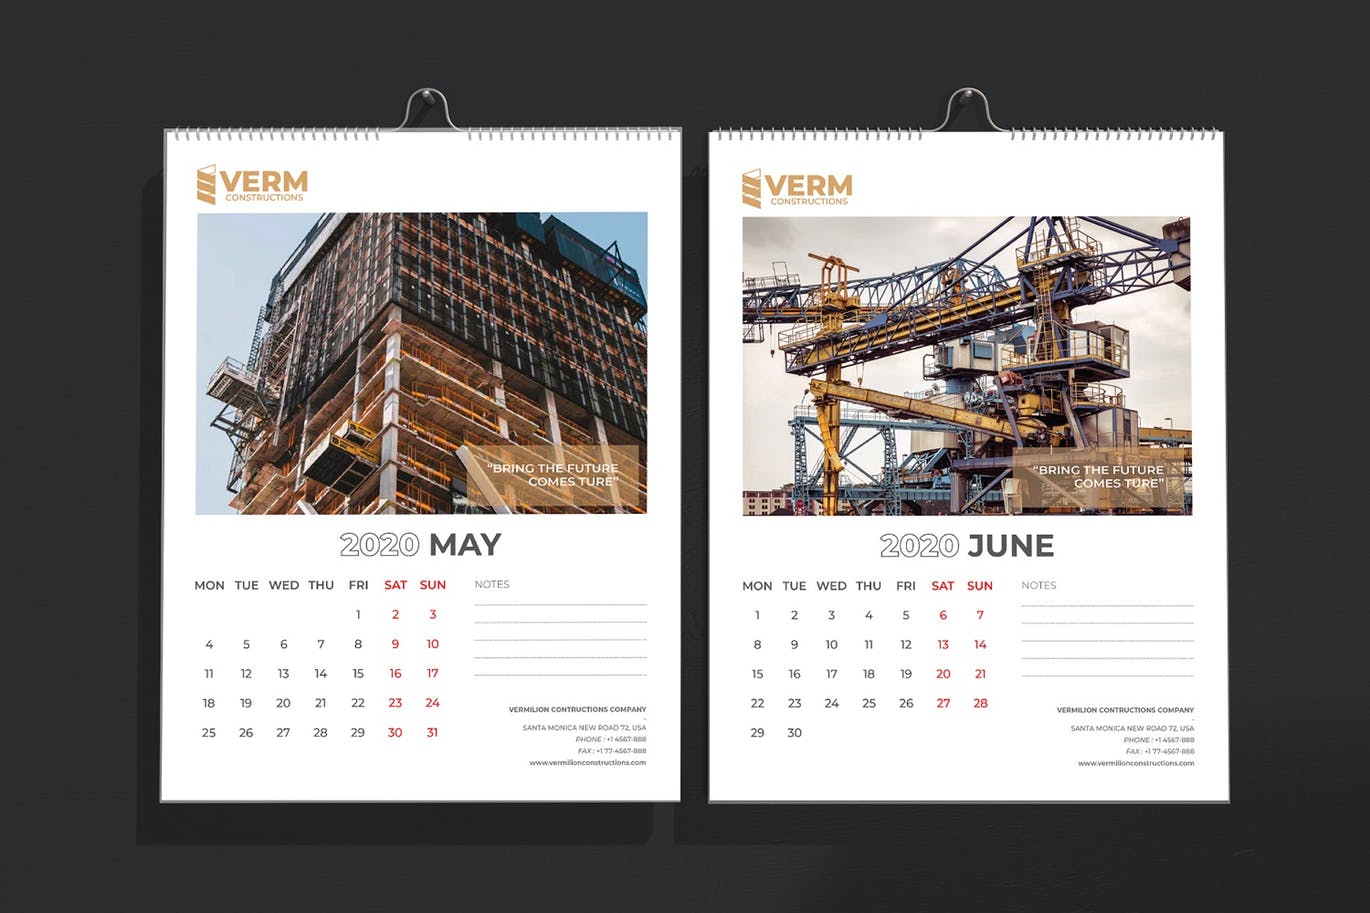 2020年建筑主题台历&挂墙日历表设计模板 Construction Wall & Table Calendar 2020插图5